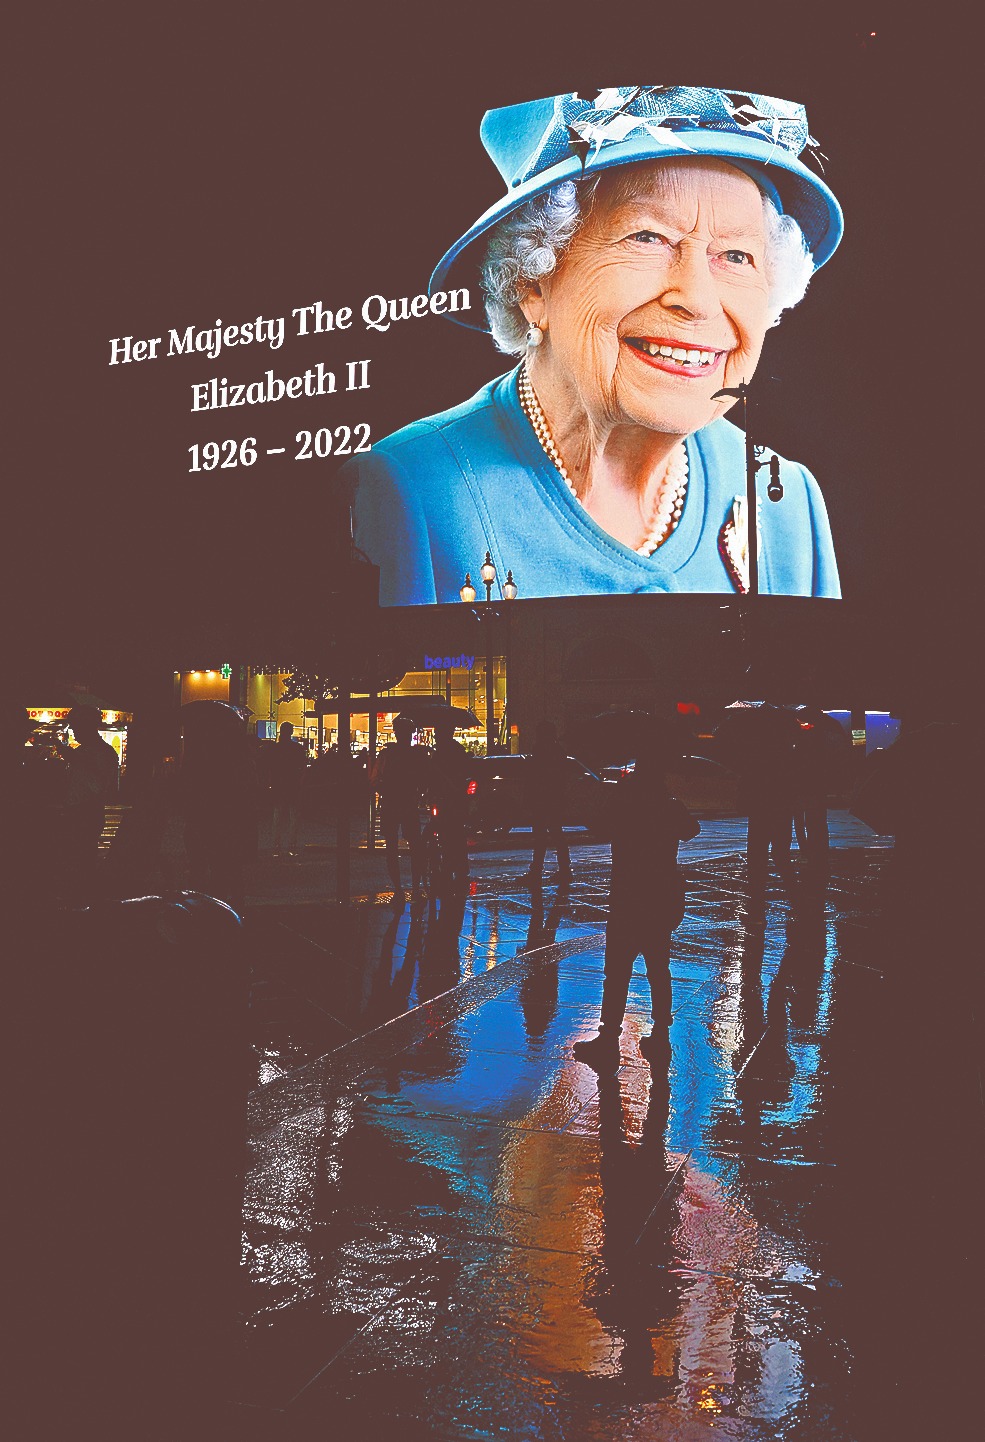 伦敦最旺购物区Piccadilly Circus的大银幕亦播放悼念女皇的讯息。